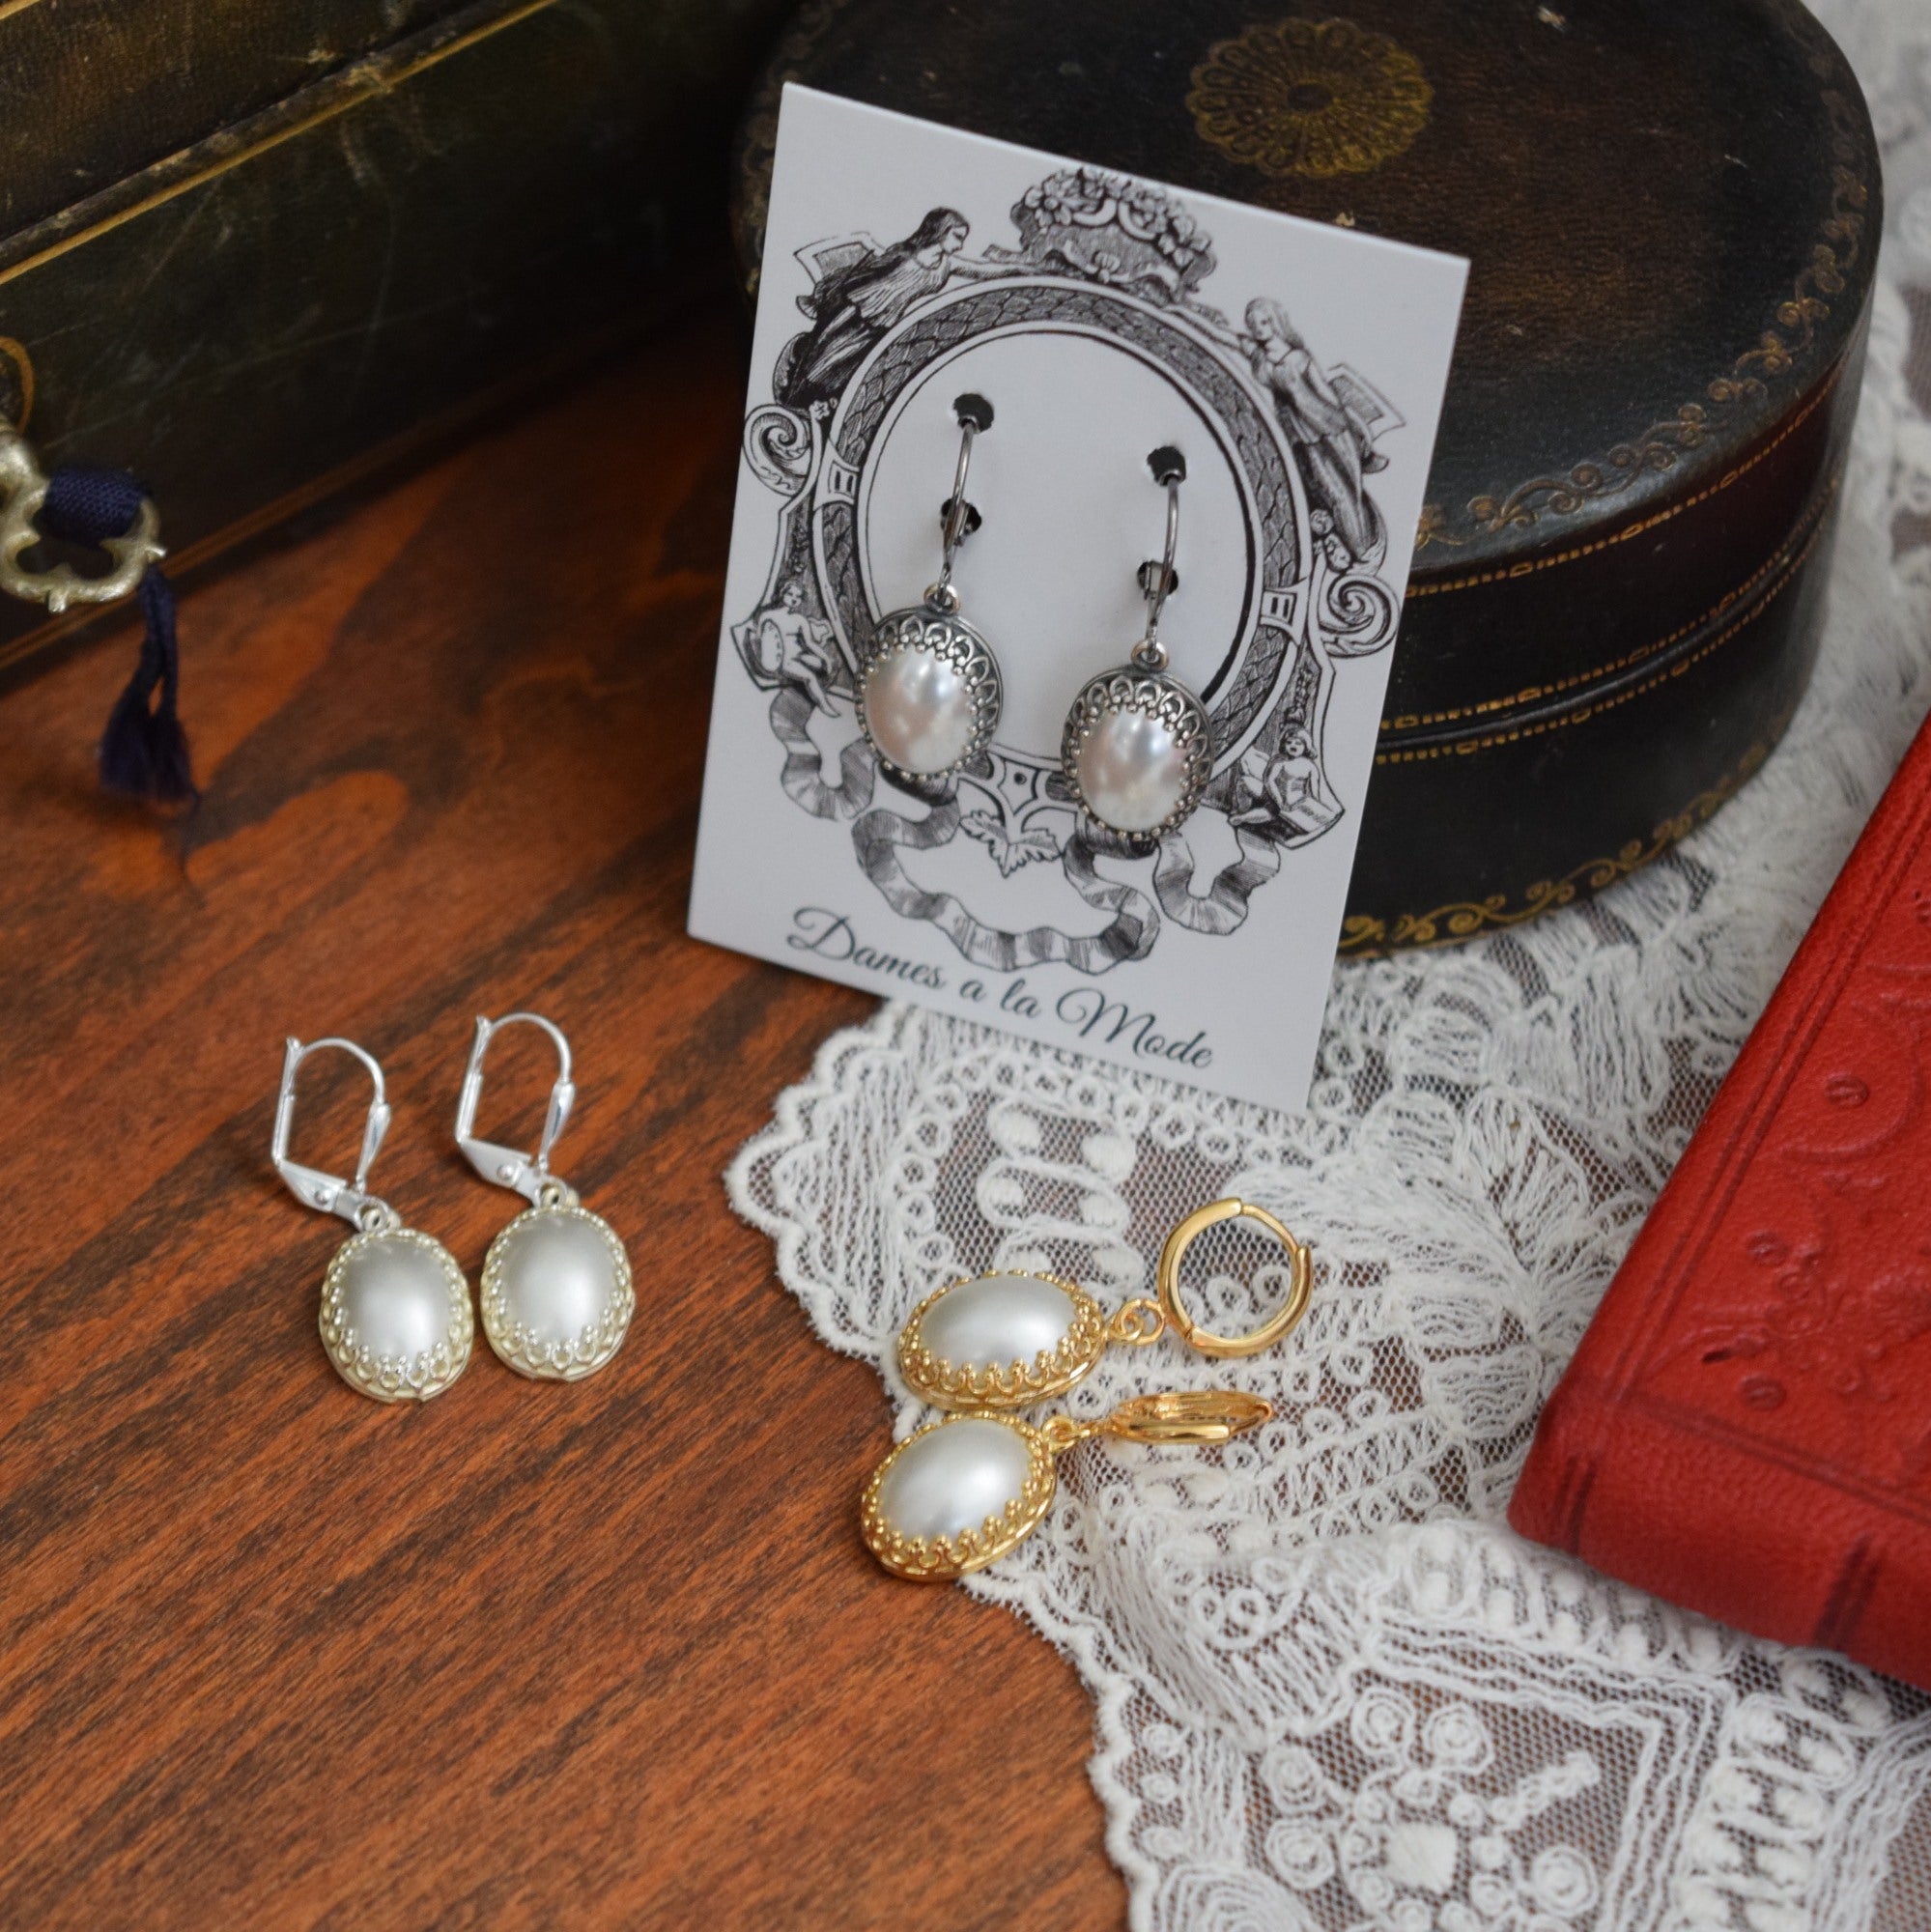 Crown set Pearl earrings - Medium Oval – Dames a la Mode